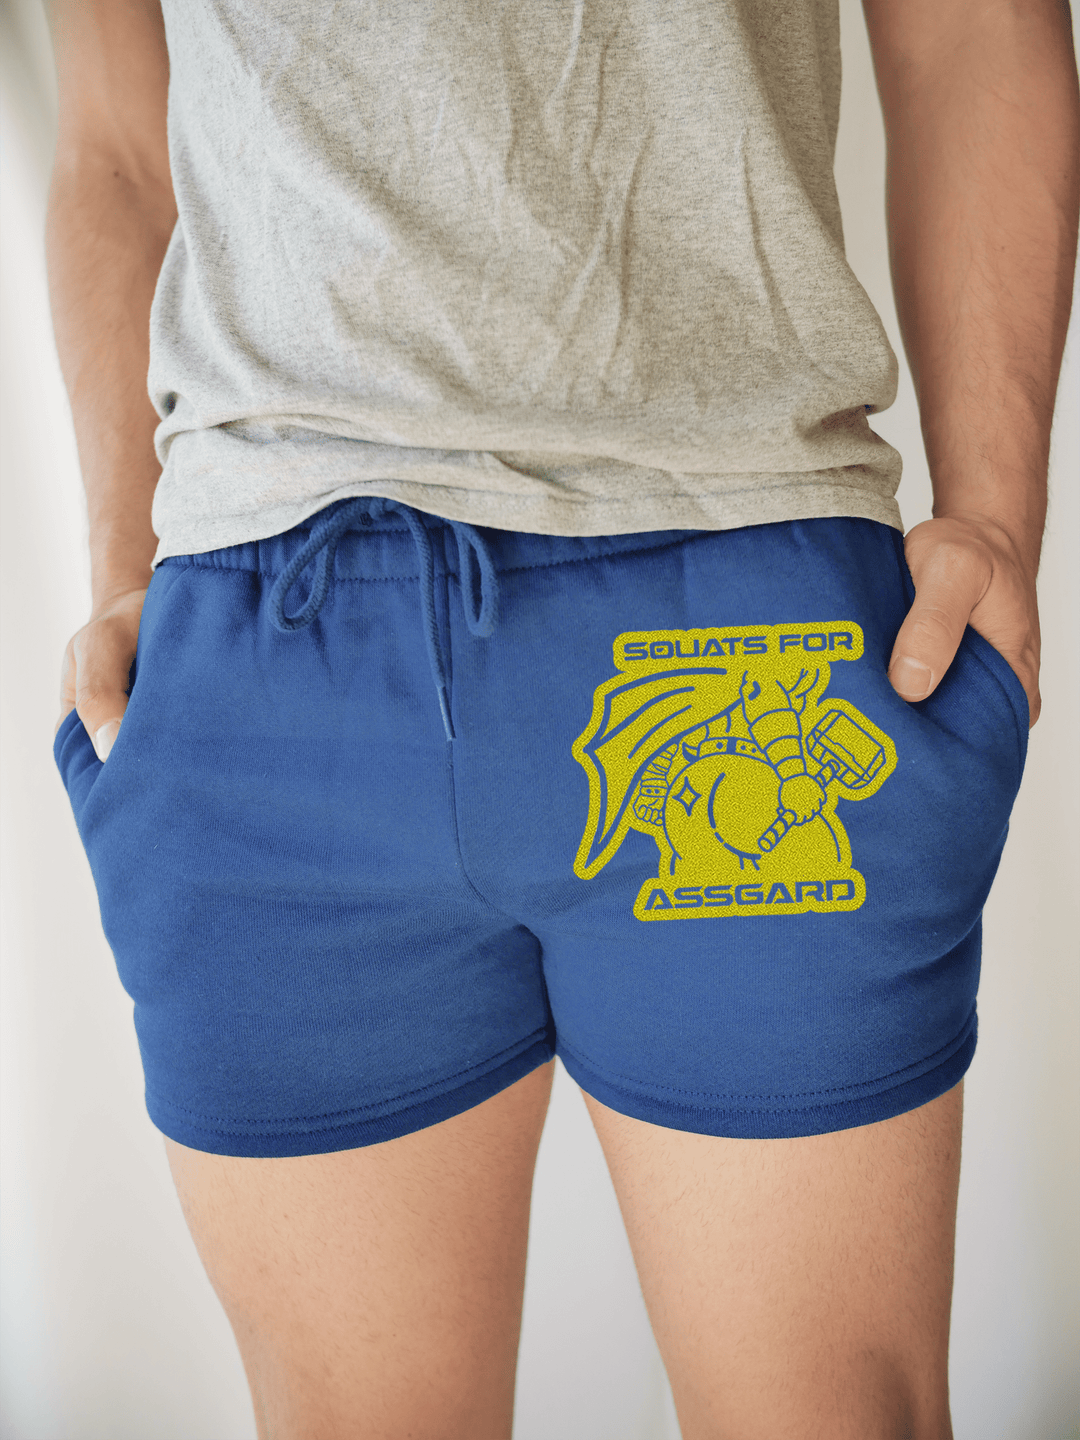 PixelThat Punderwear Shorts Royal Blue / S / Front Squats For ASSgard Men's Gym Shorts